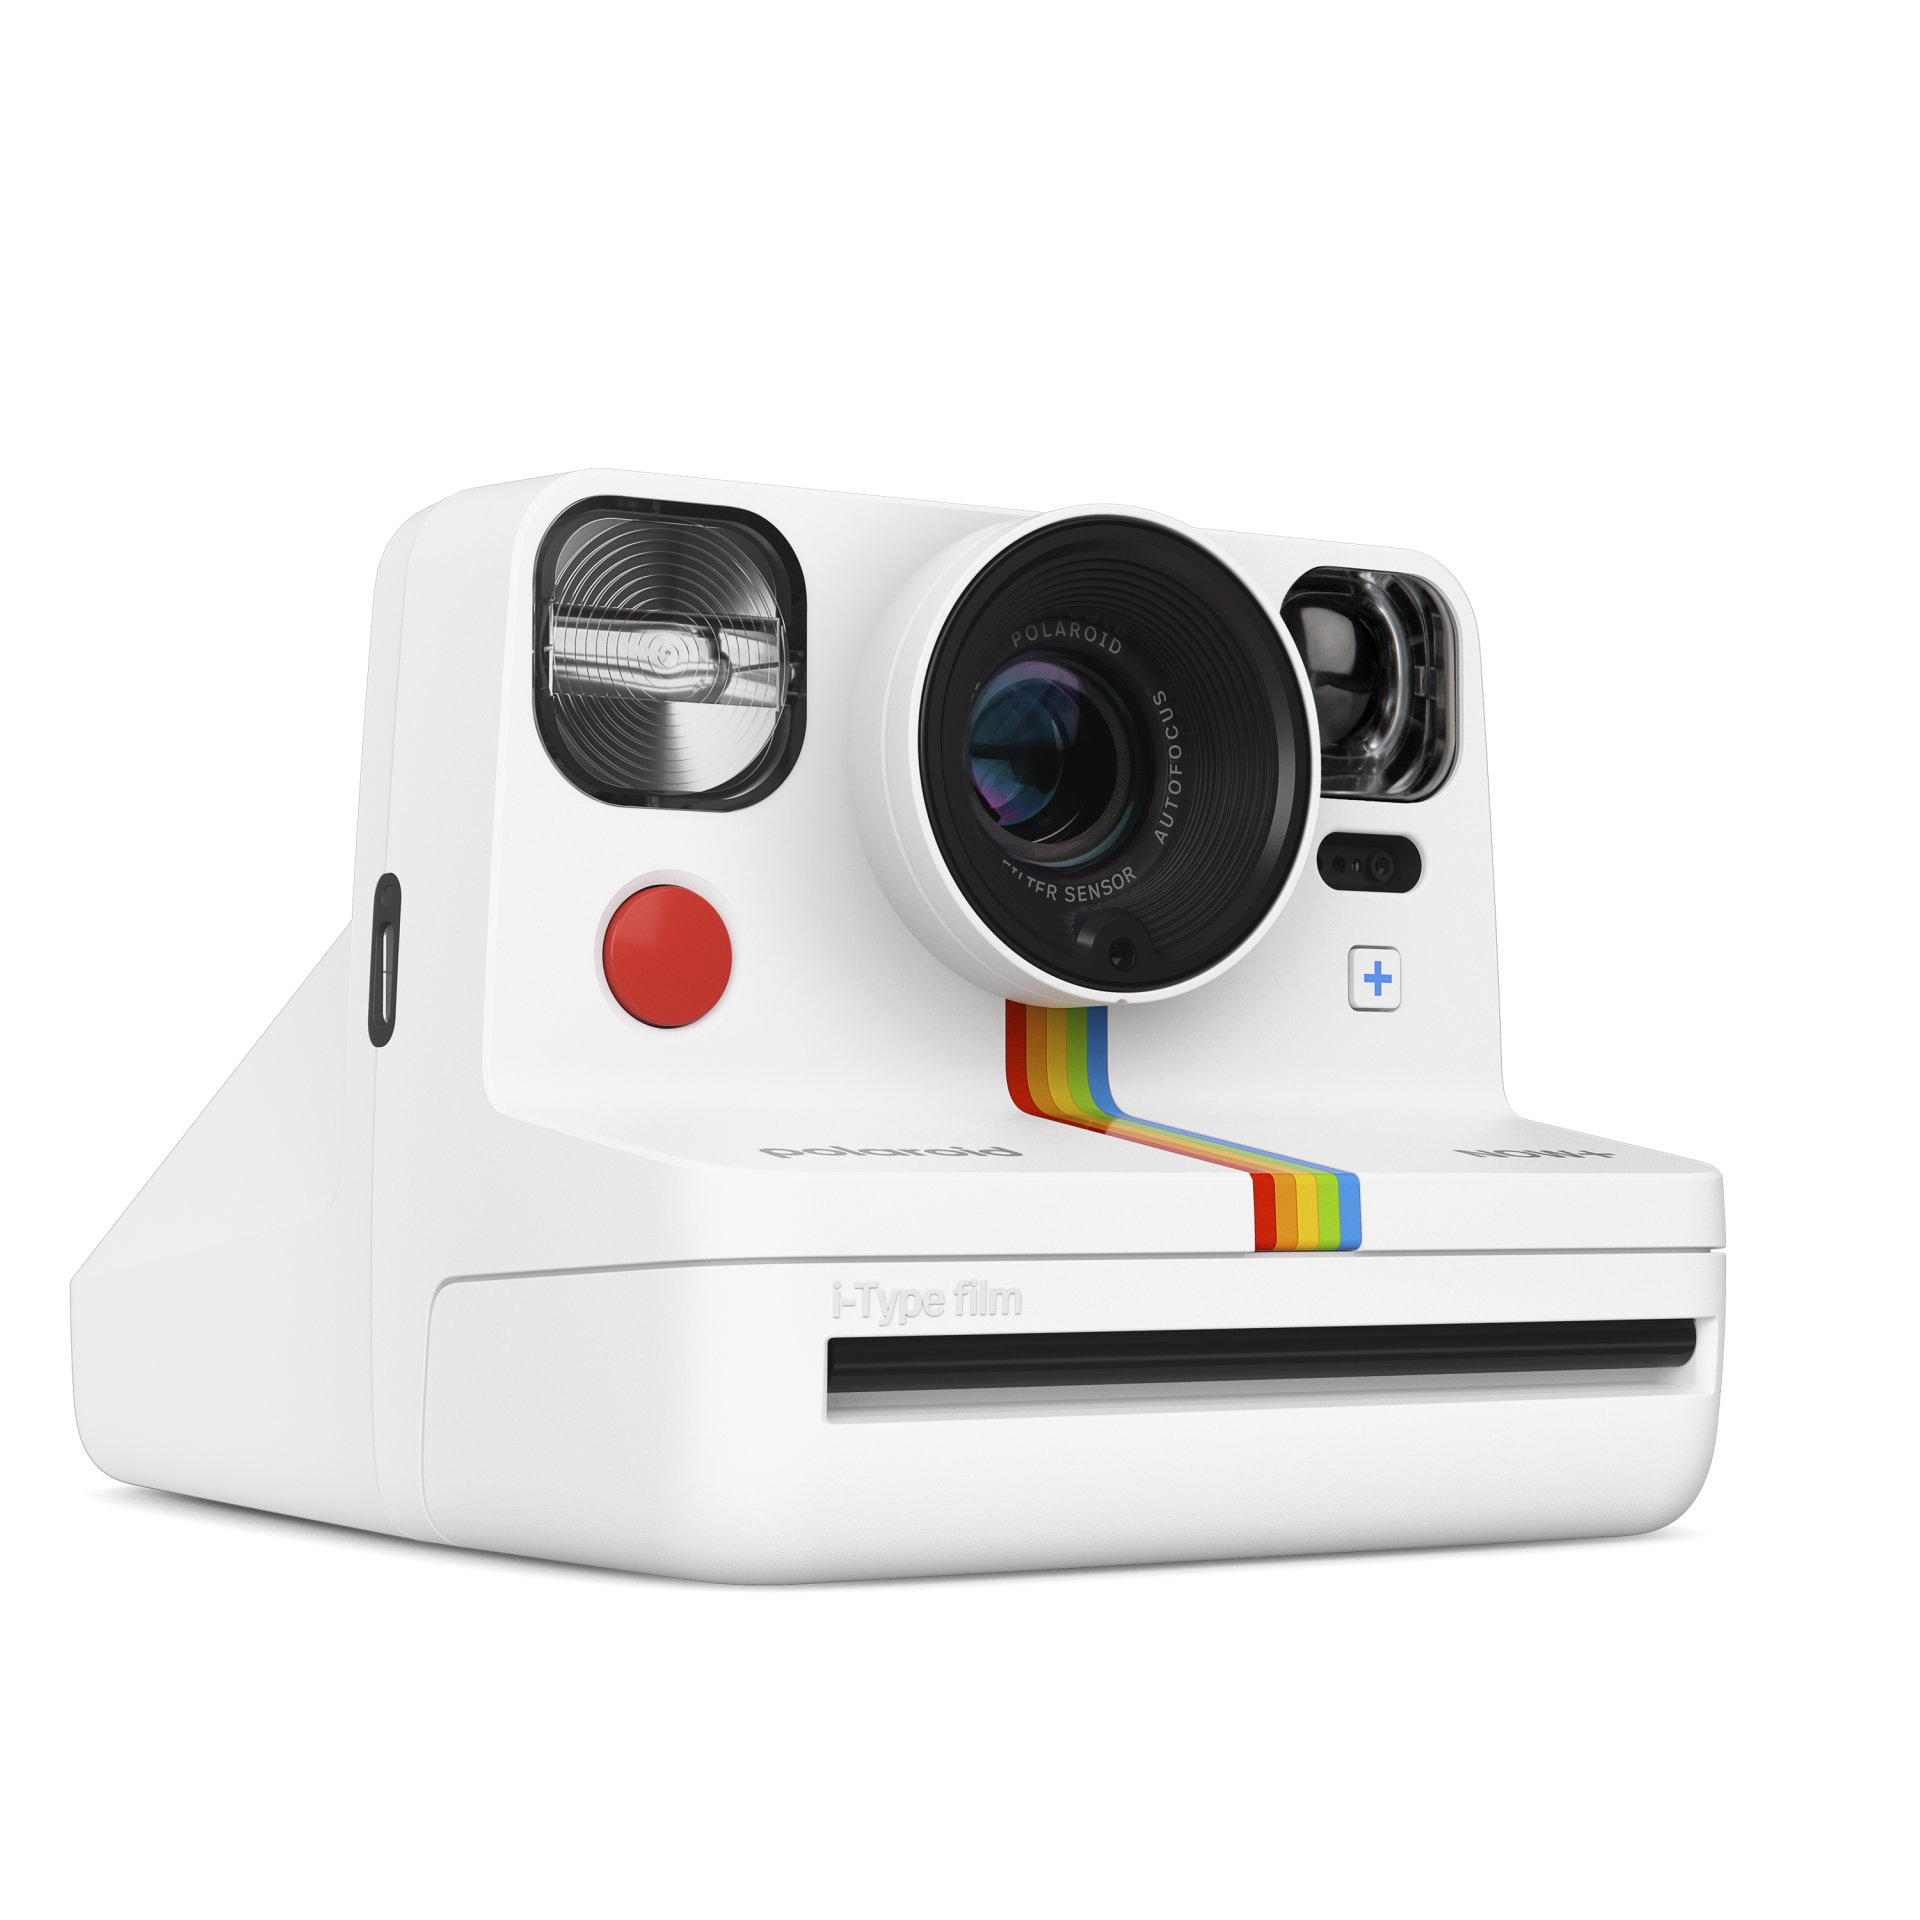 Cámara Instantánea Polaroid Onestep 600 Usada Decoración